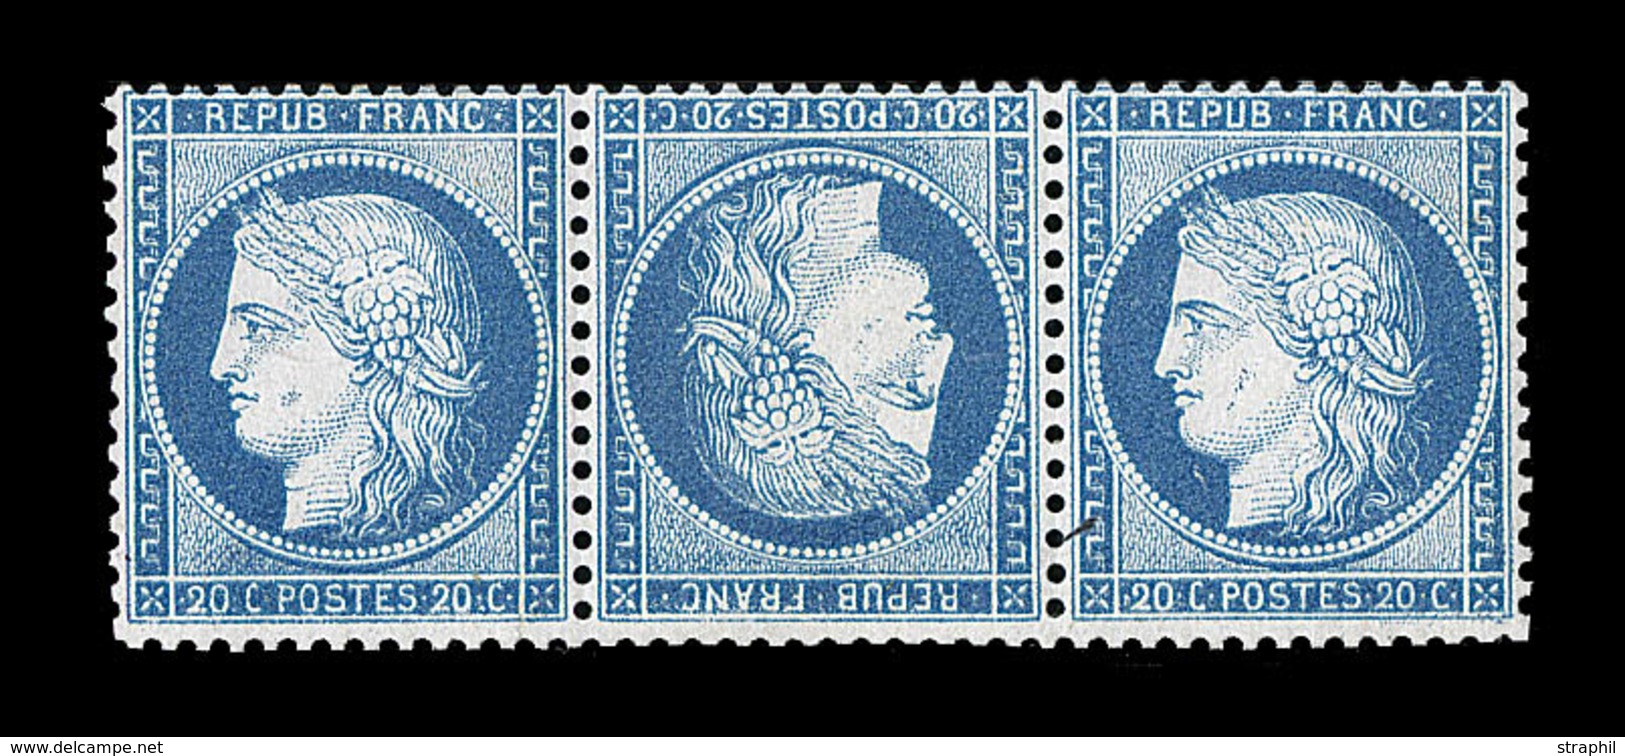 (**) SIEGE DE PARIS (1870) - (**) - N°37c - 20c Bleu - Tête Bêche - Ds Bde De 3 - Signé Brun - TB - 1870 Belagerung Von Paris